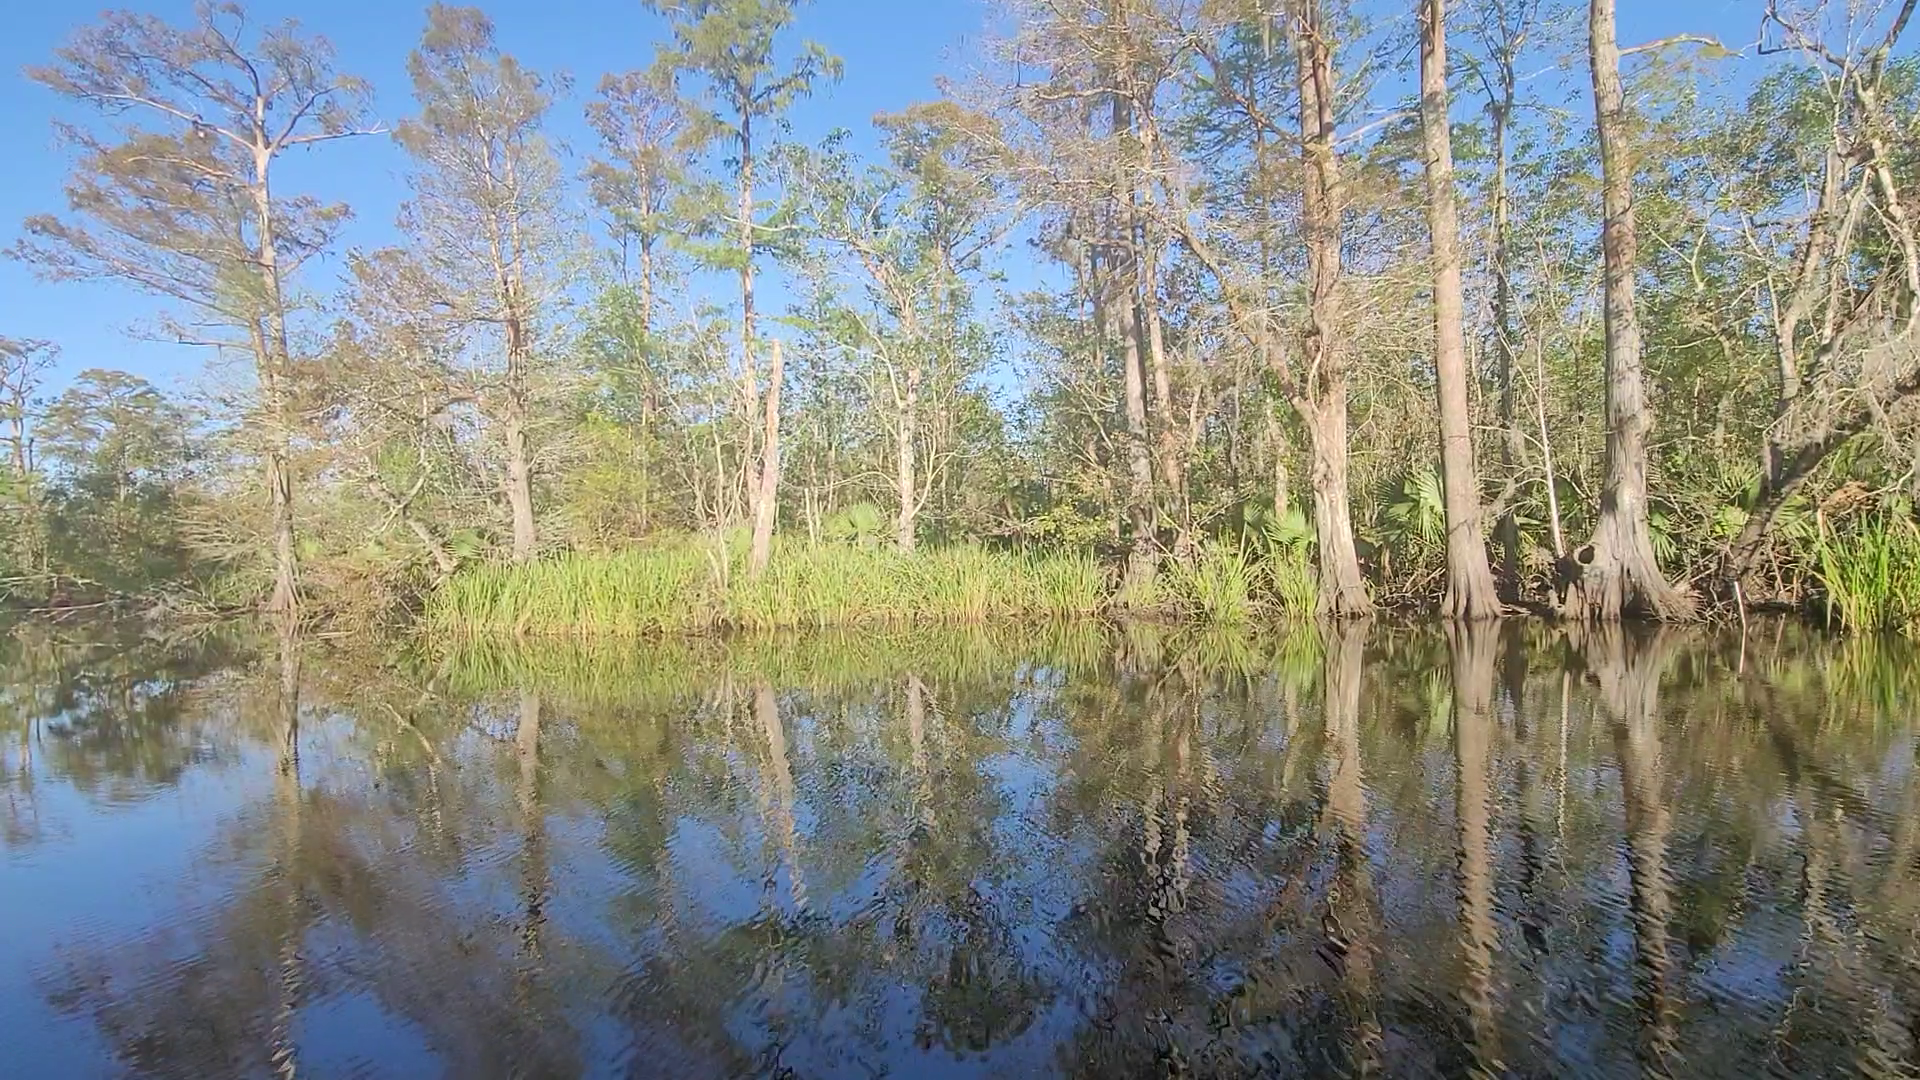 맨착늪지대 전경 (manchac swamp view)